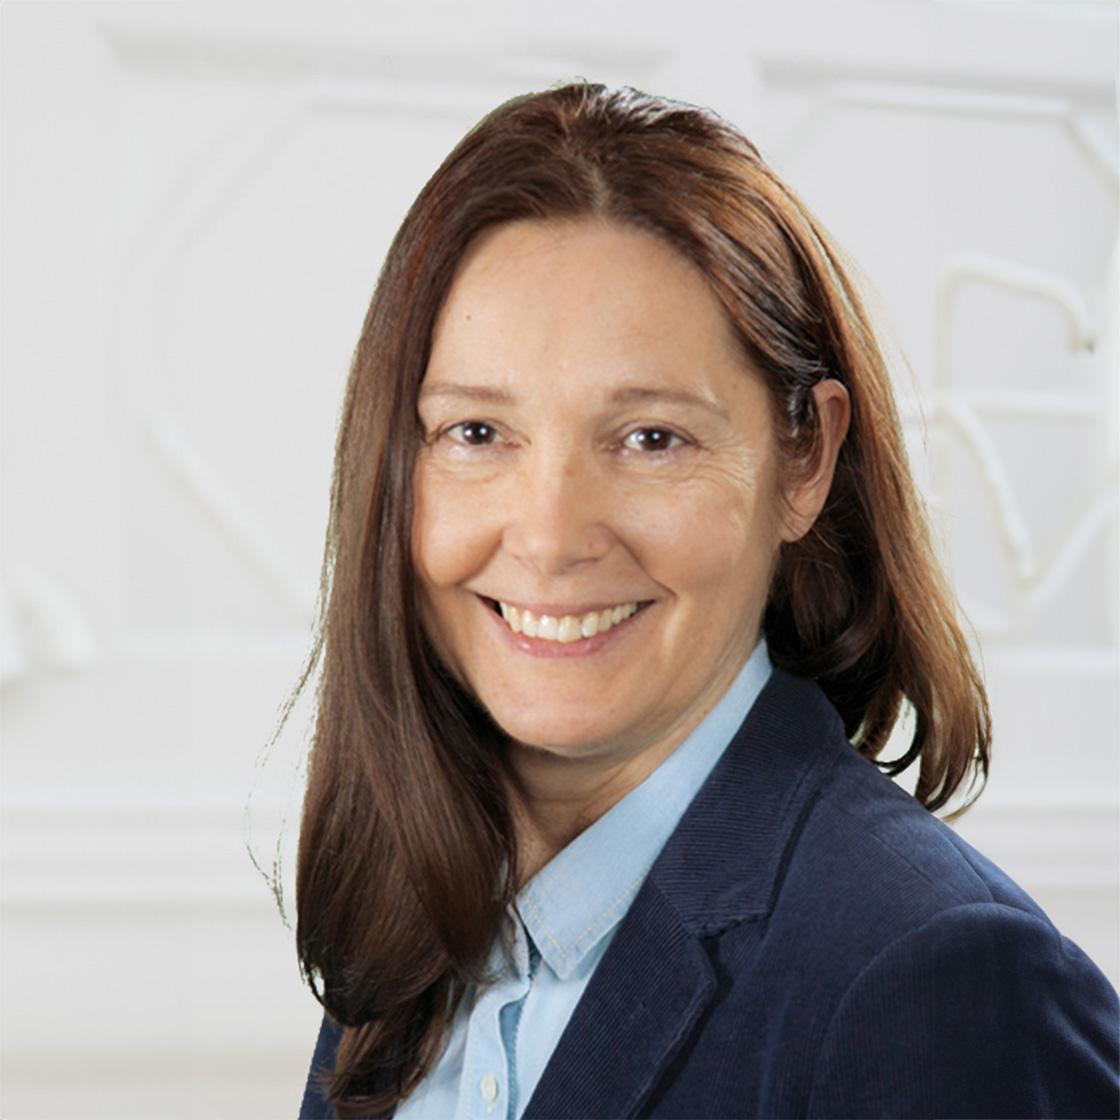 Marika Sztipanovics 